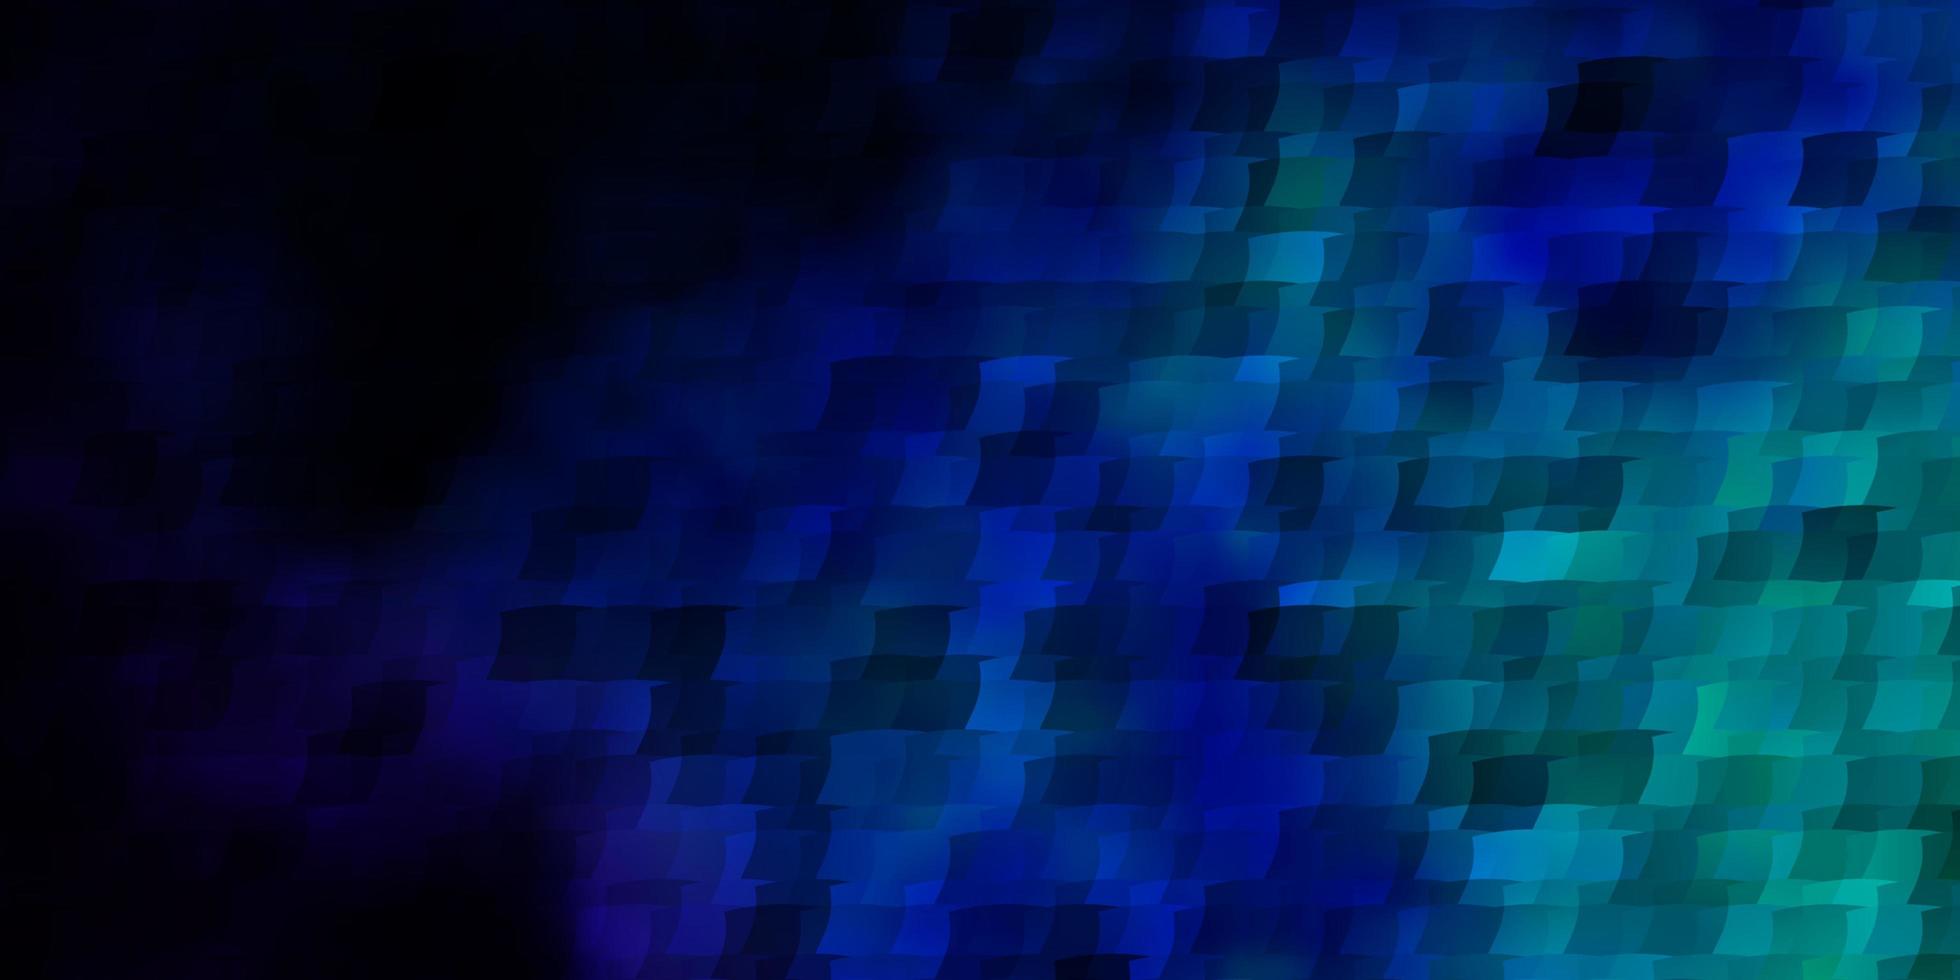 plantilla de vector azul oscuro con rectángulos